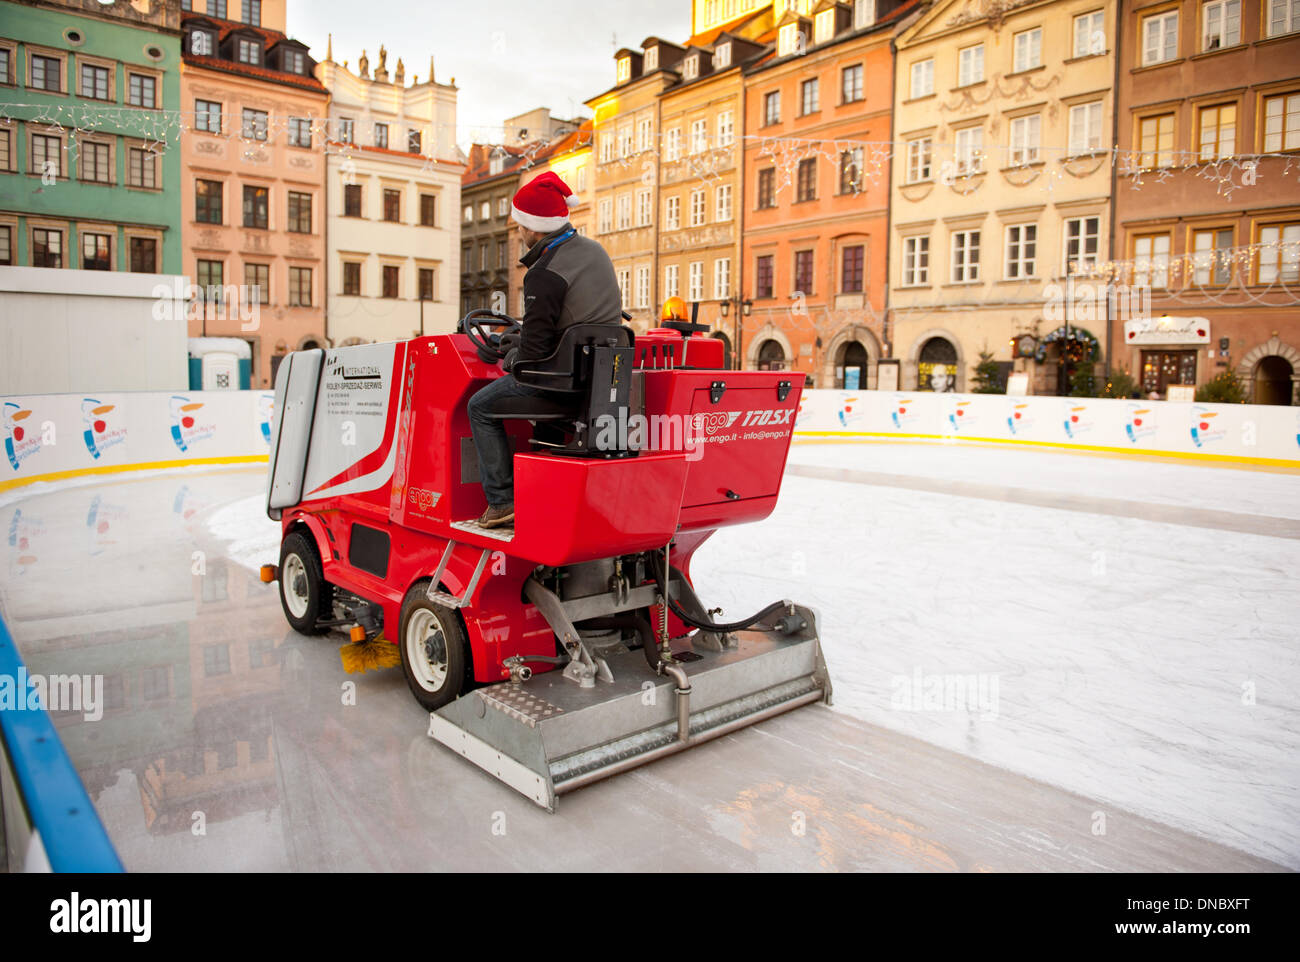 Mann auf rote Maschine sogar Eisbahn in der Altstadt Stockfoto